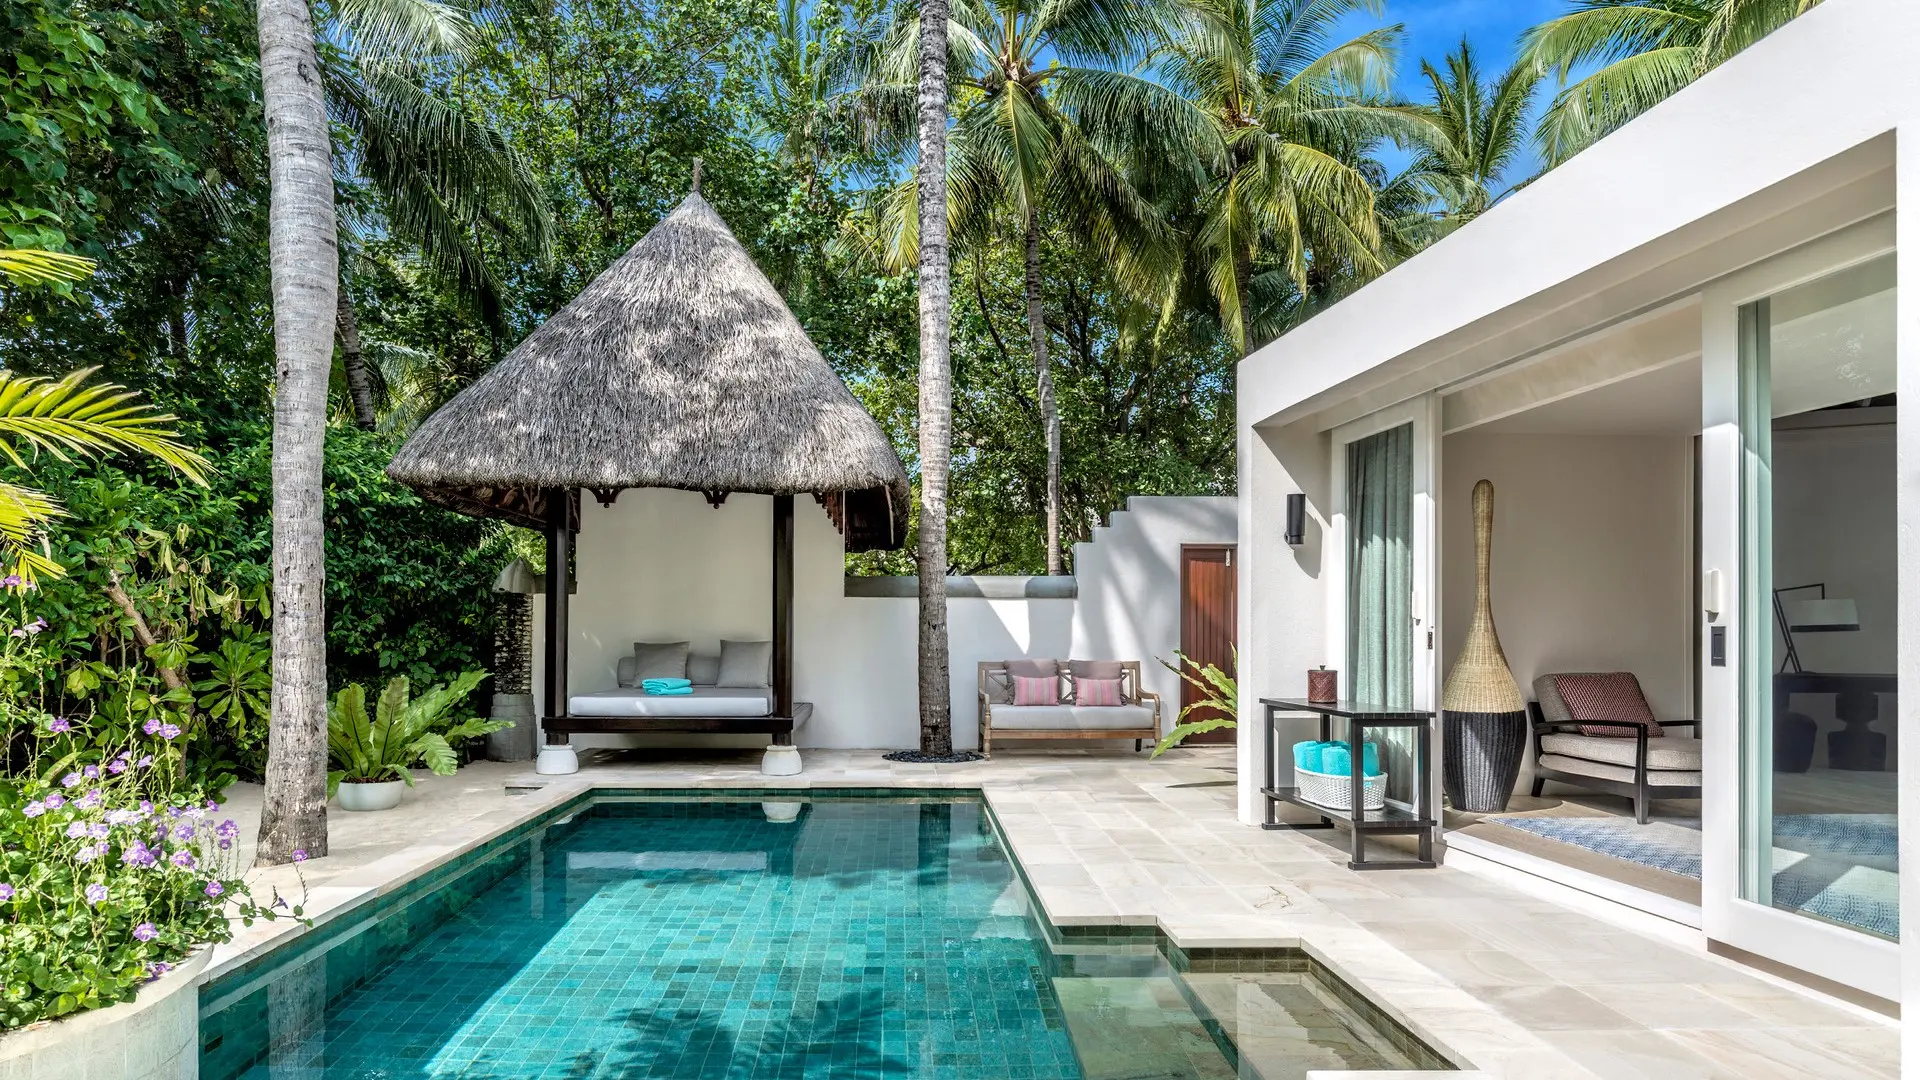 Hotel review Accommodation' - Four Seasons Resort Maldives at Kuda Huraa - 5